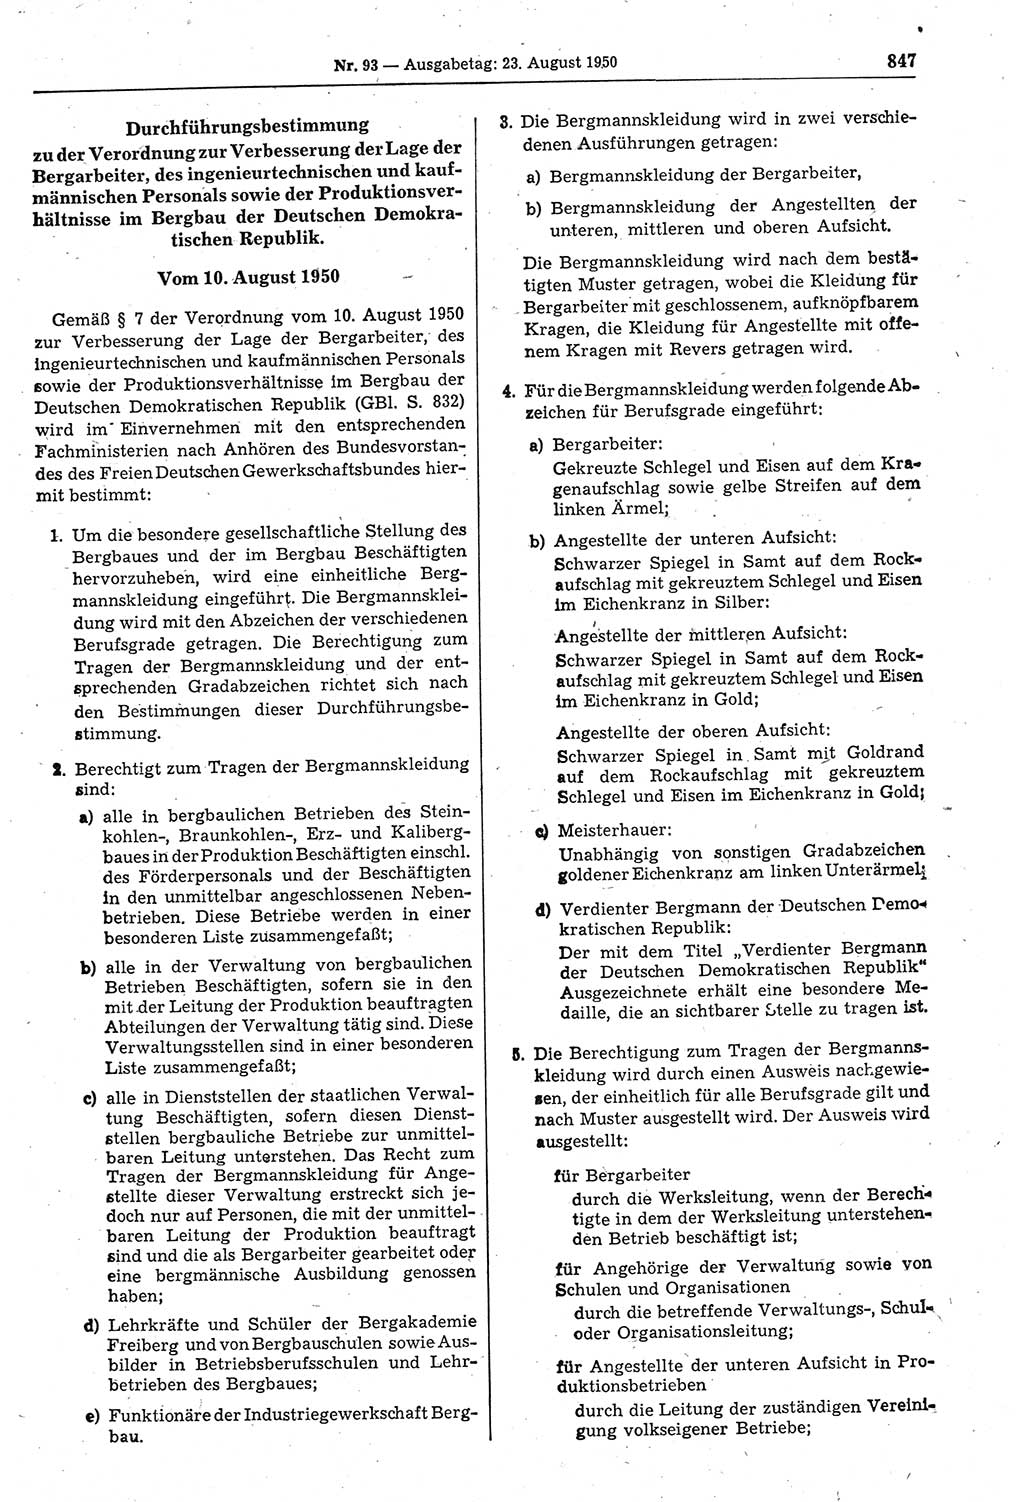 Gesetzblatt (GBl.) der Deutschen Demokratischen Republik (DDR) 1950, Seite 847 (GBl. DDR 1950, S. 847)